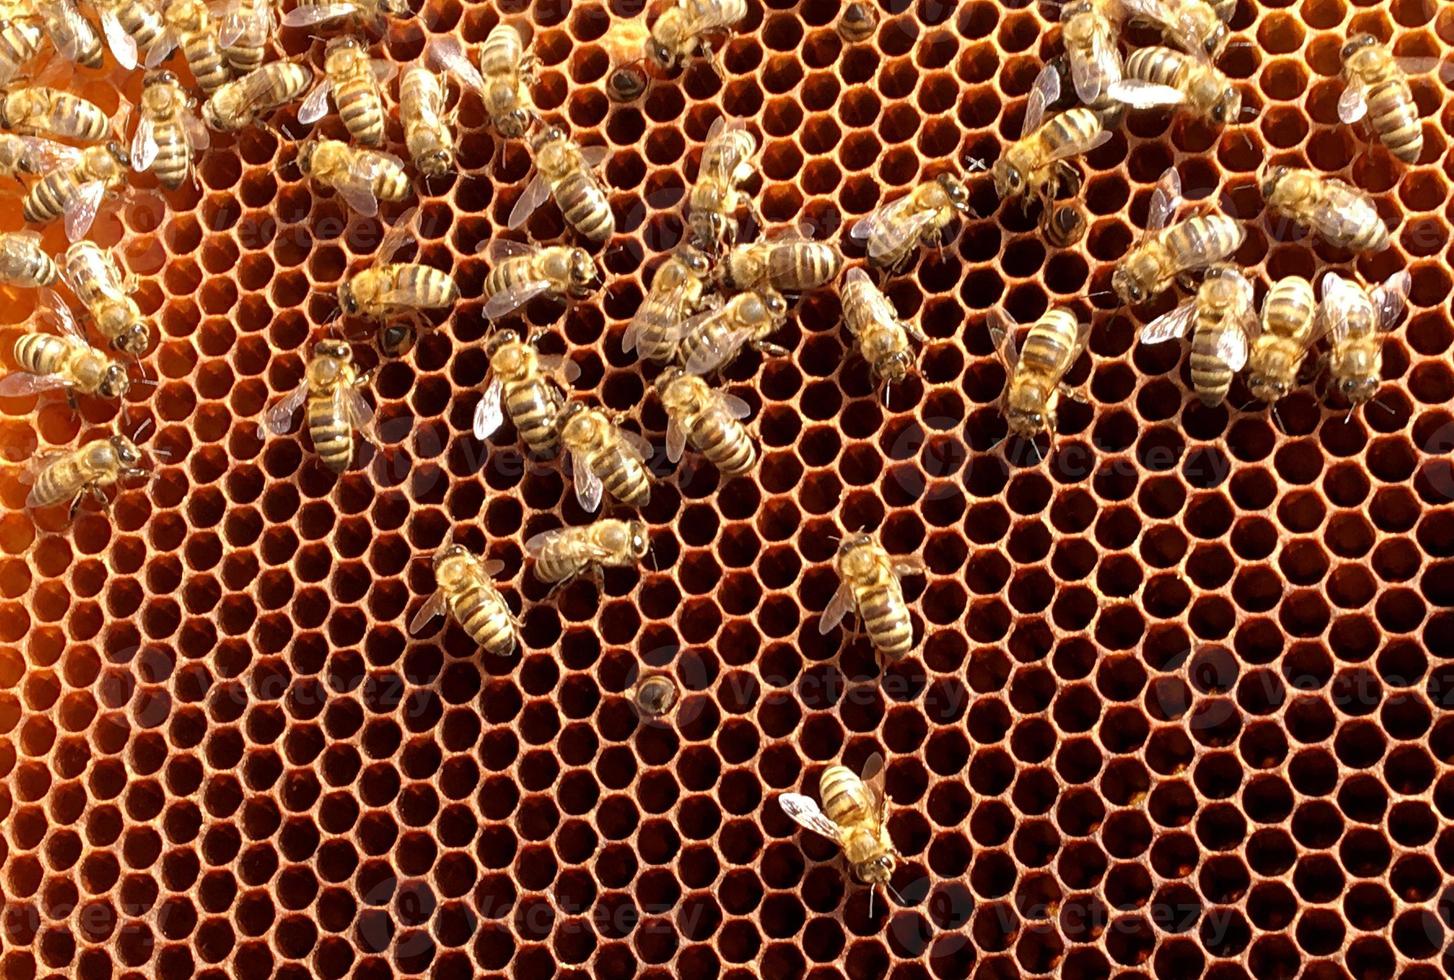 Fondo de textura hexagonal, panal de cera de una colmena de abejas foto